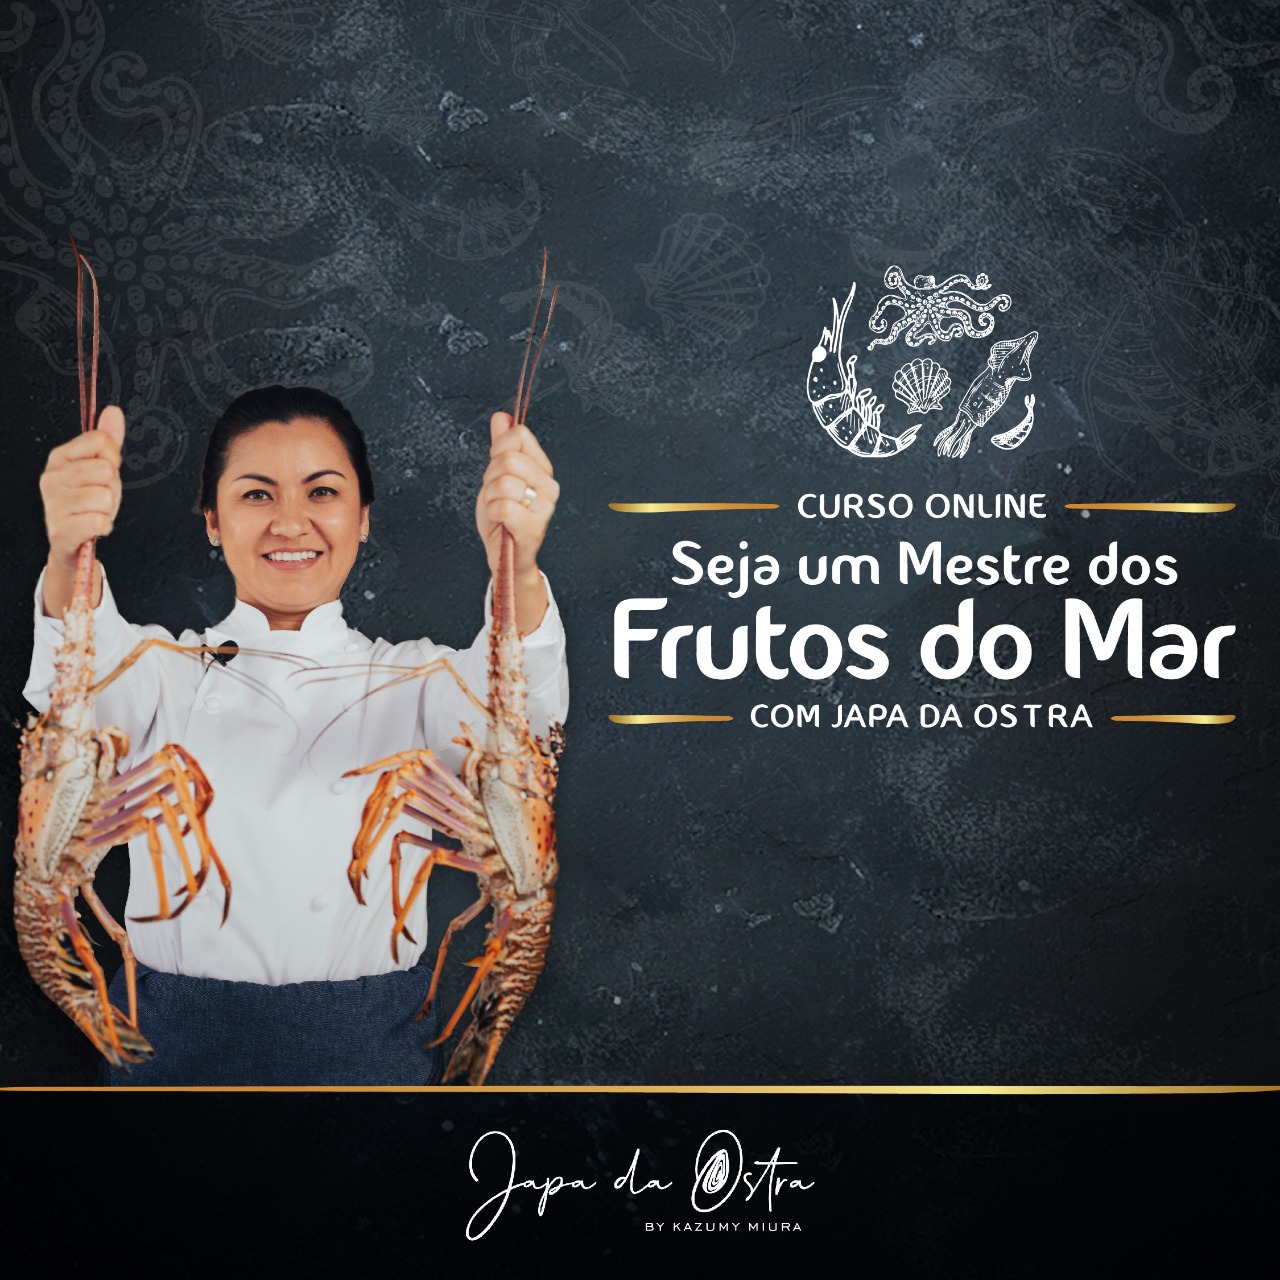 Japa da Ostra lança curso online no próximo dia 7 de março. Vem saber!